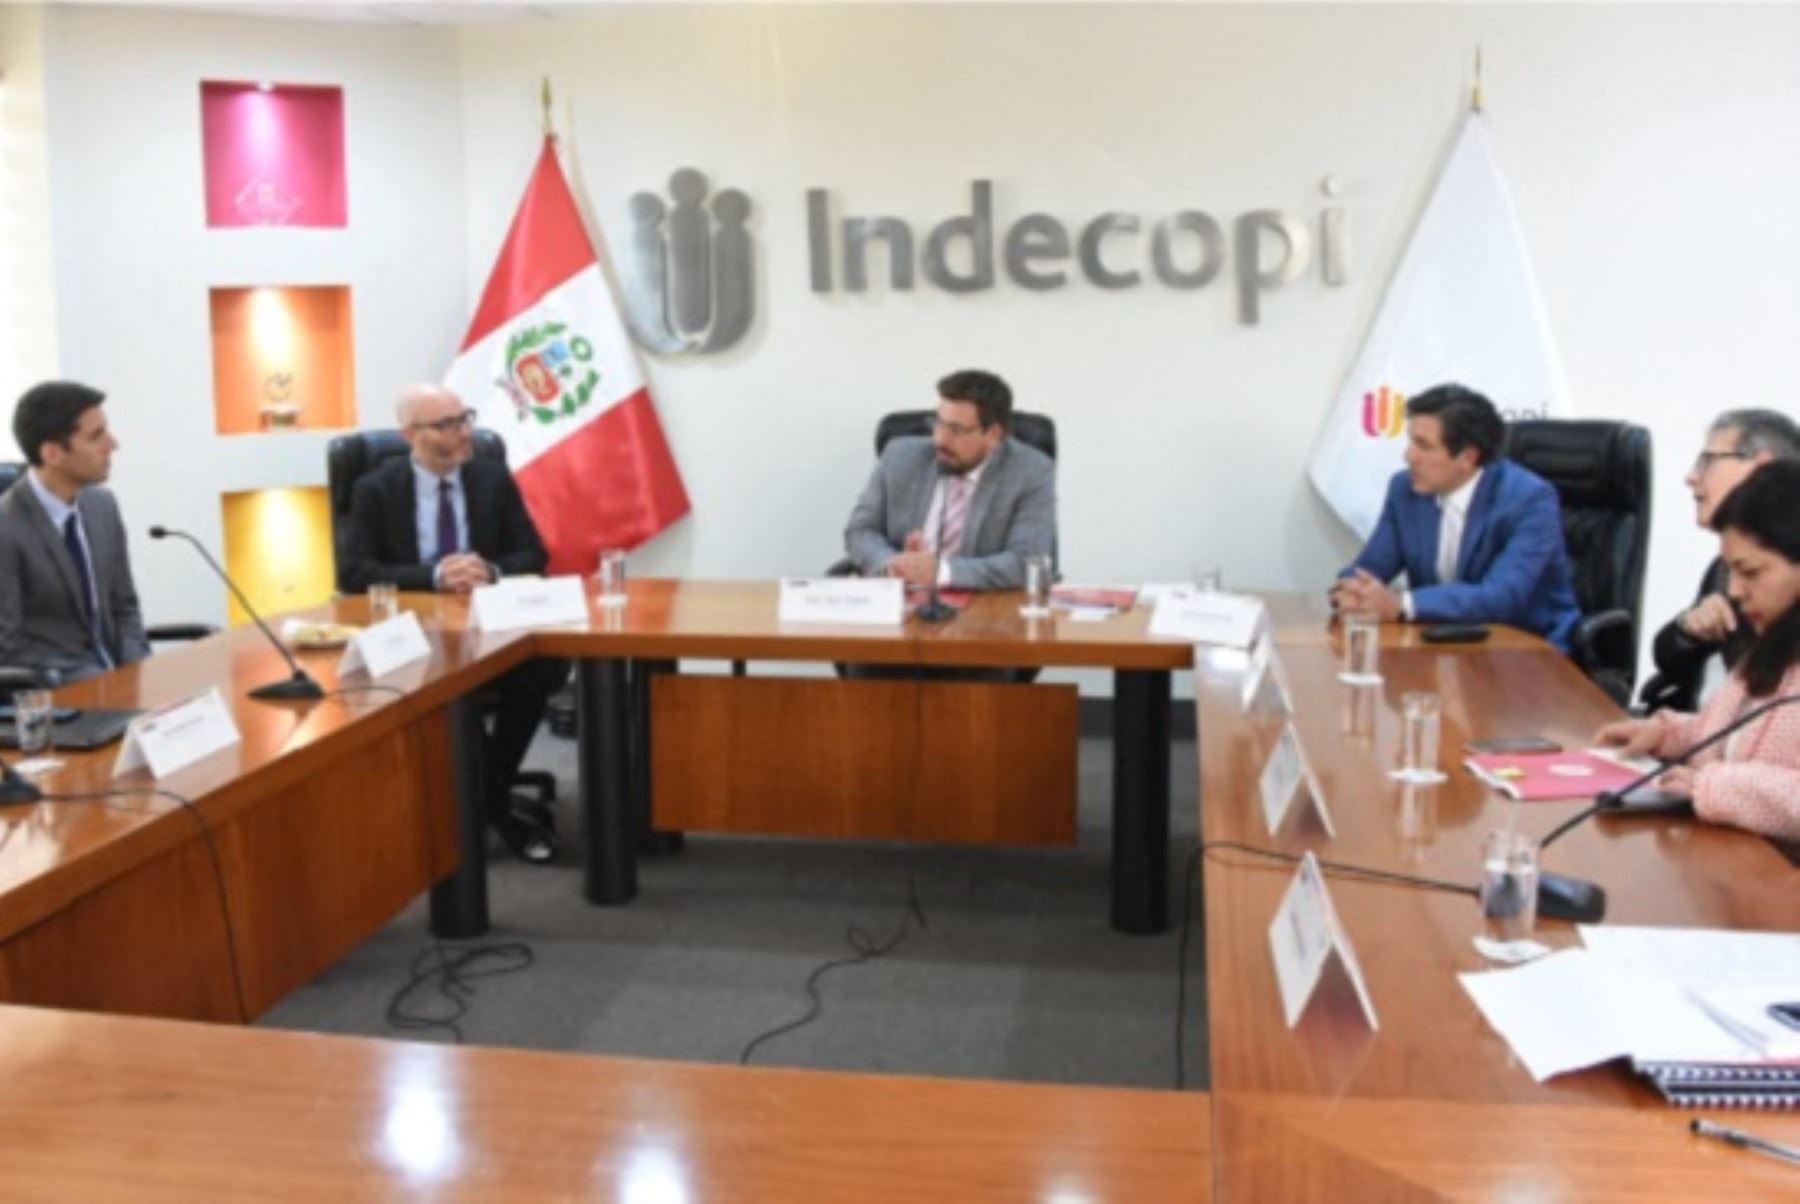 El titular del Indecopi, Julián Palacín Gutiérrez, se reunió hoy con el jefe de la División de Competencia de la OCDE, Ori Schwartz, para ratificar el compromiso de promover la competencia y mercados libres. Foto: Cortesía.